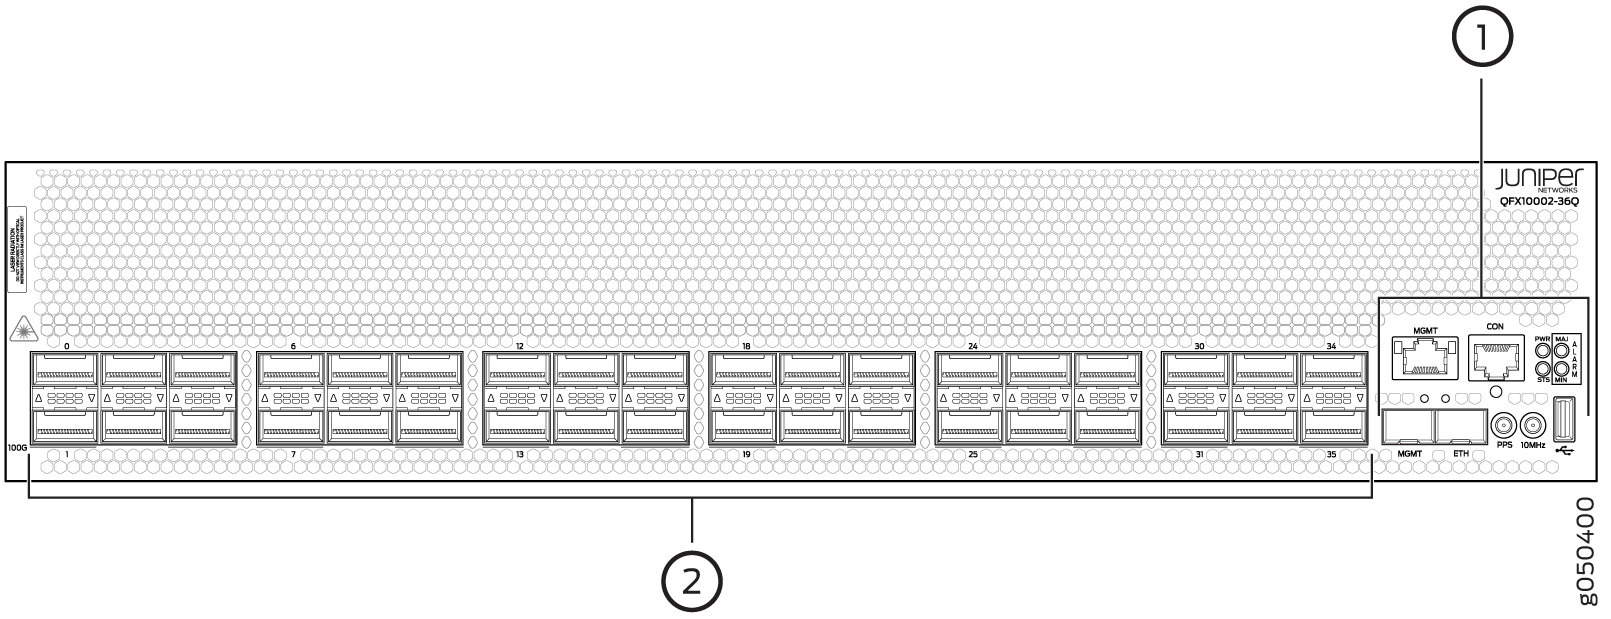 Juniper QFX10002-36Q management panel (1) and port panel (2)